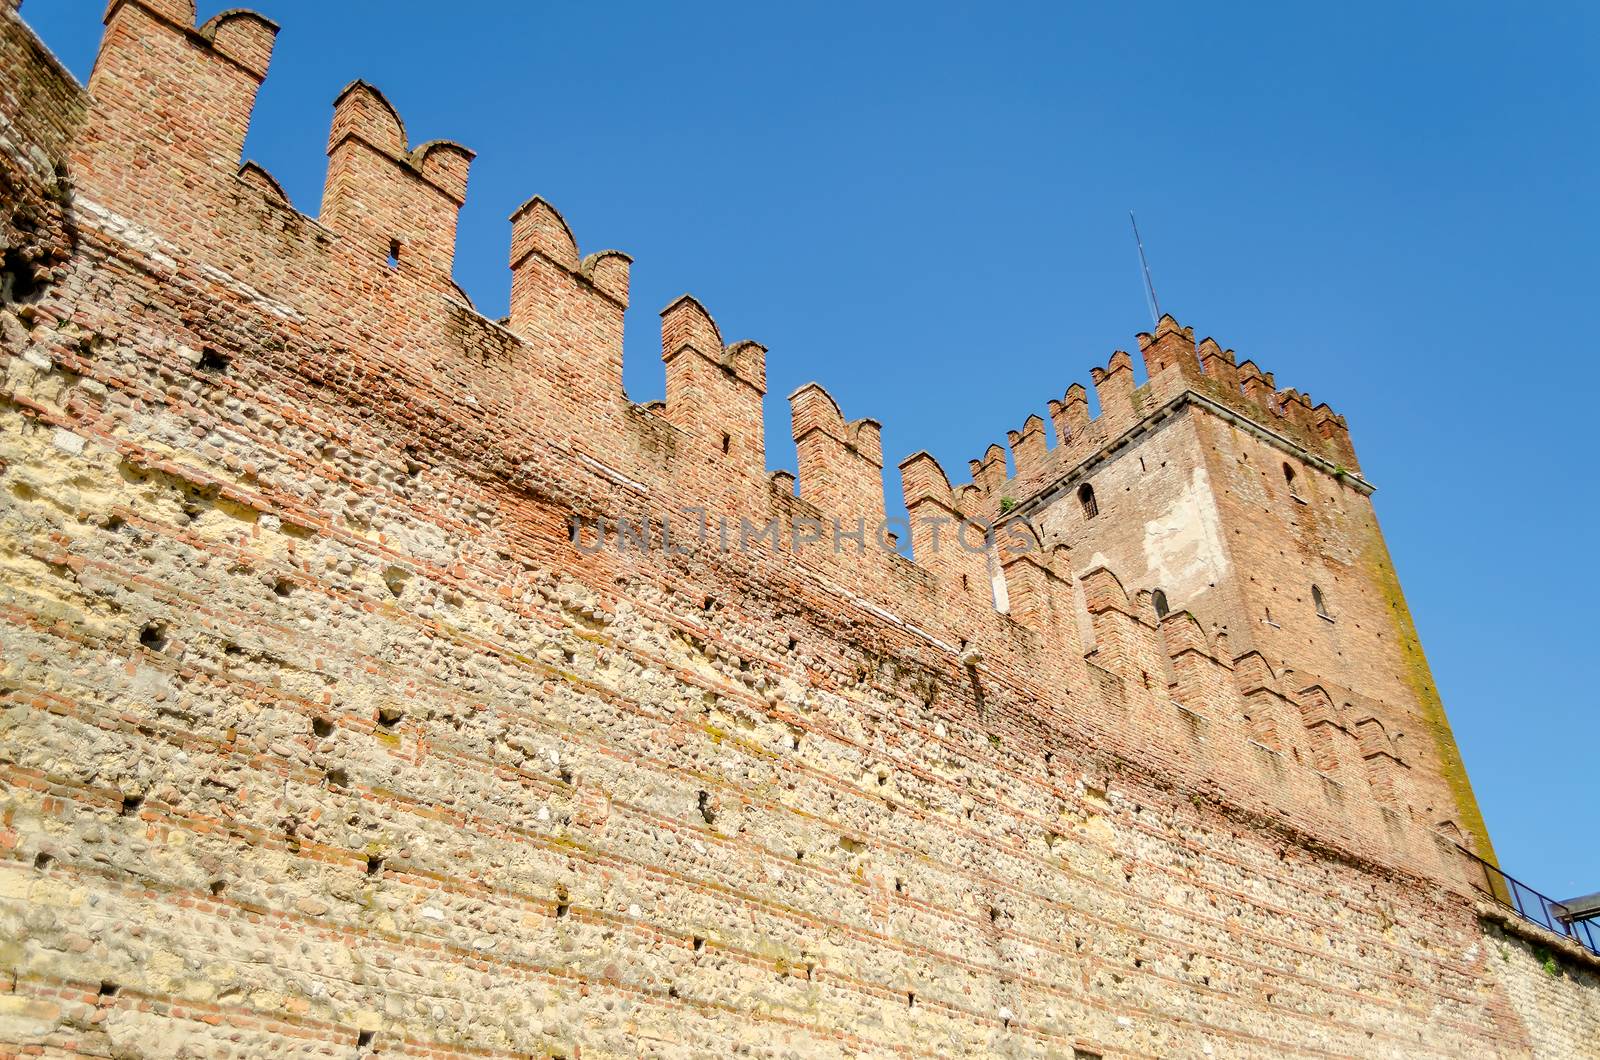 Medieval Old Castle Castelvecchio in Verona, Italy by marcorubino